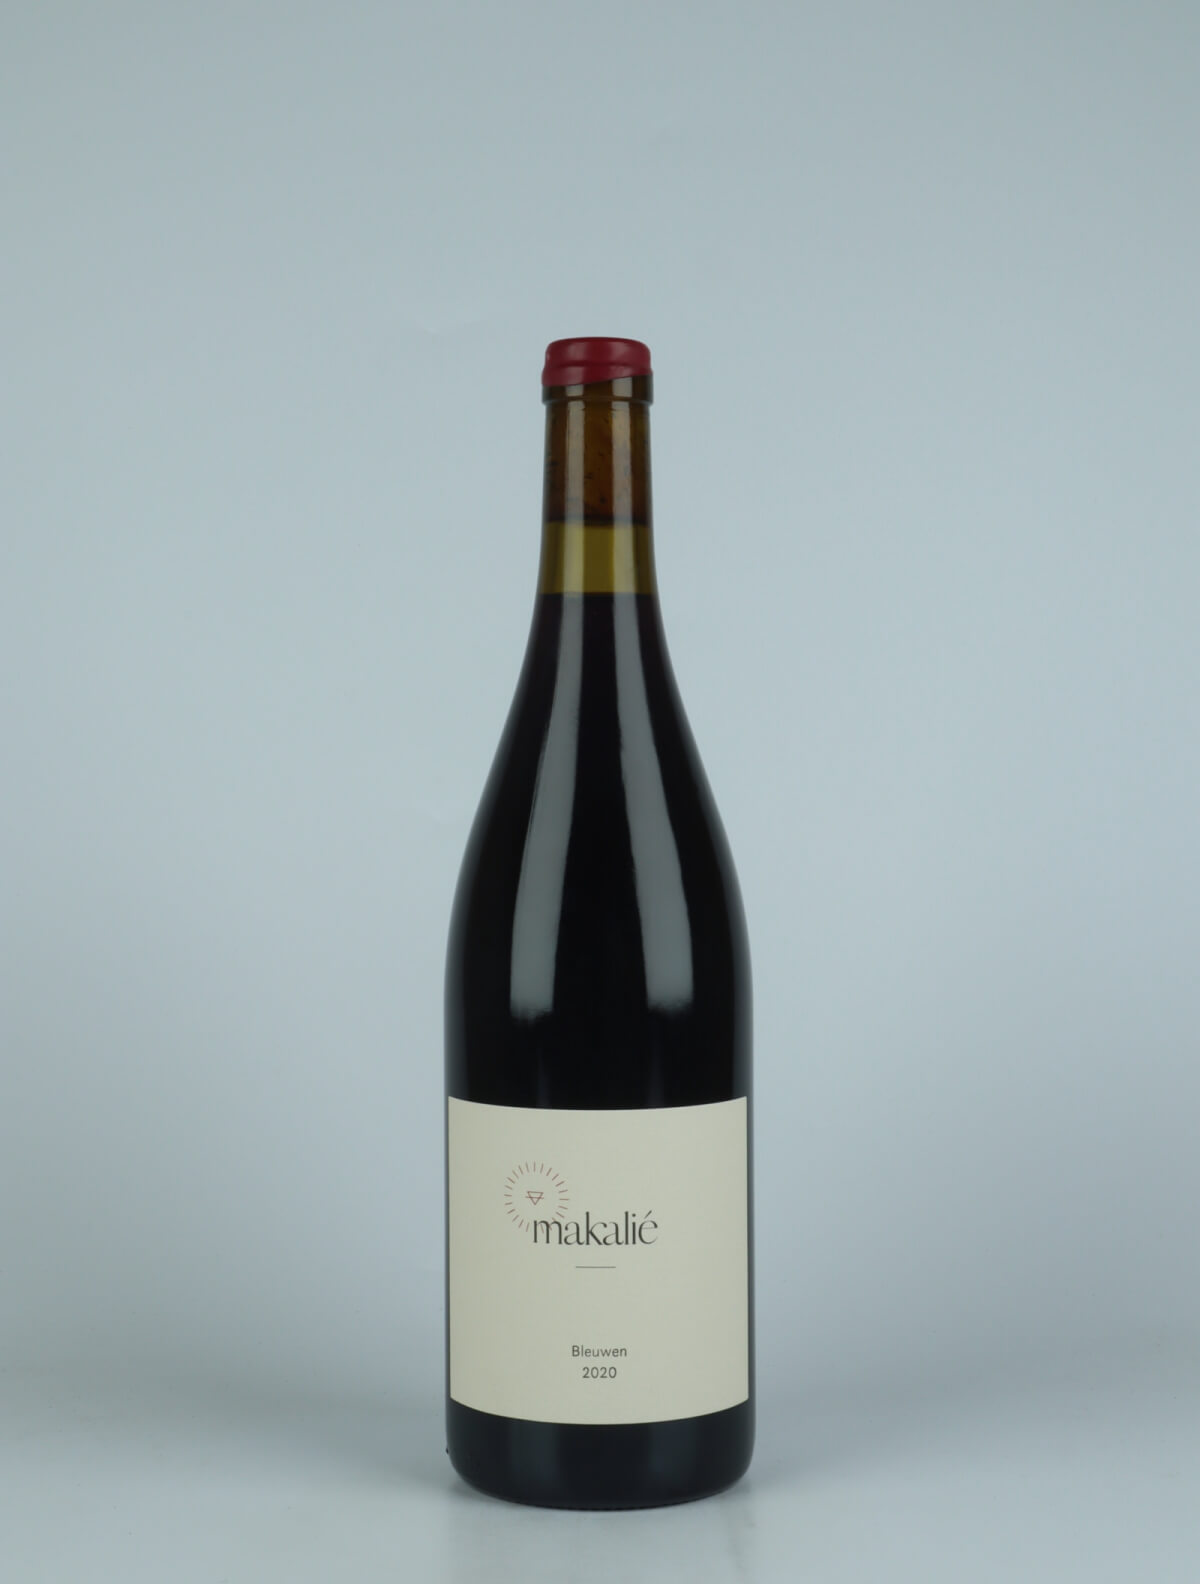 A bottle 2020 Bleuwen Red wine from Makalié, Baden in Germany